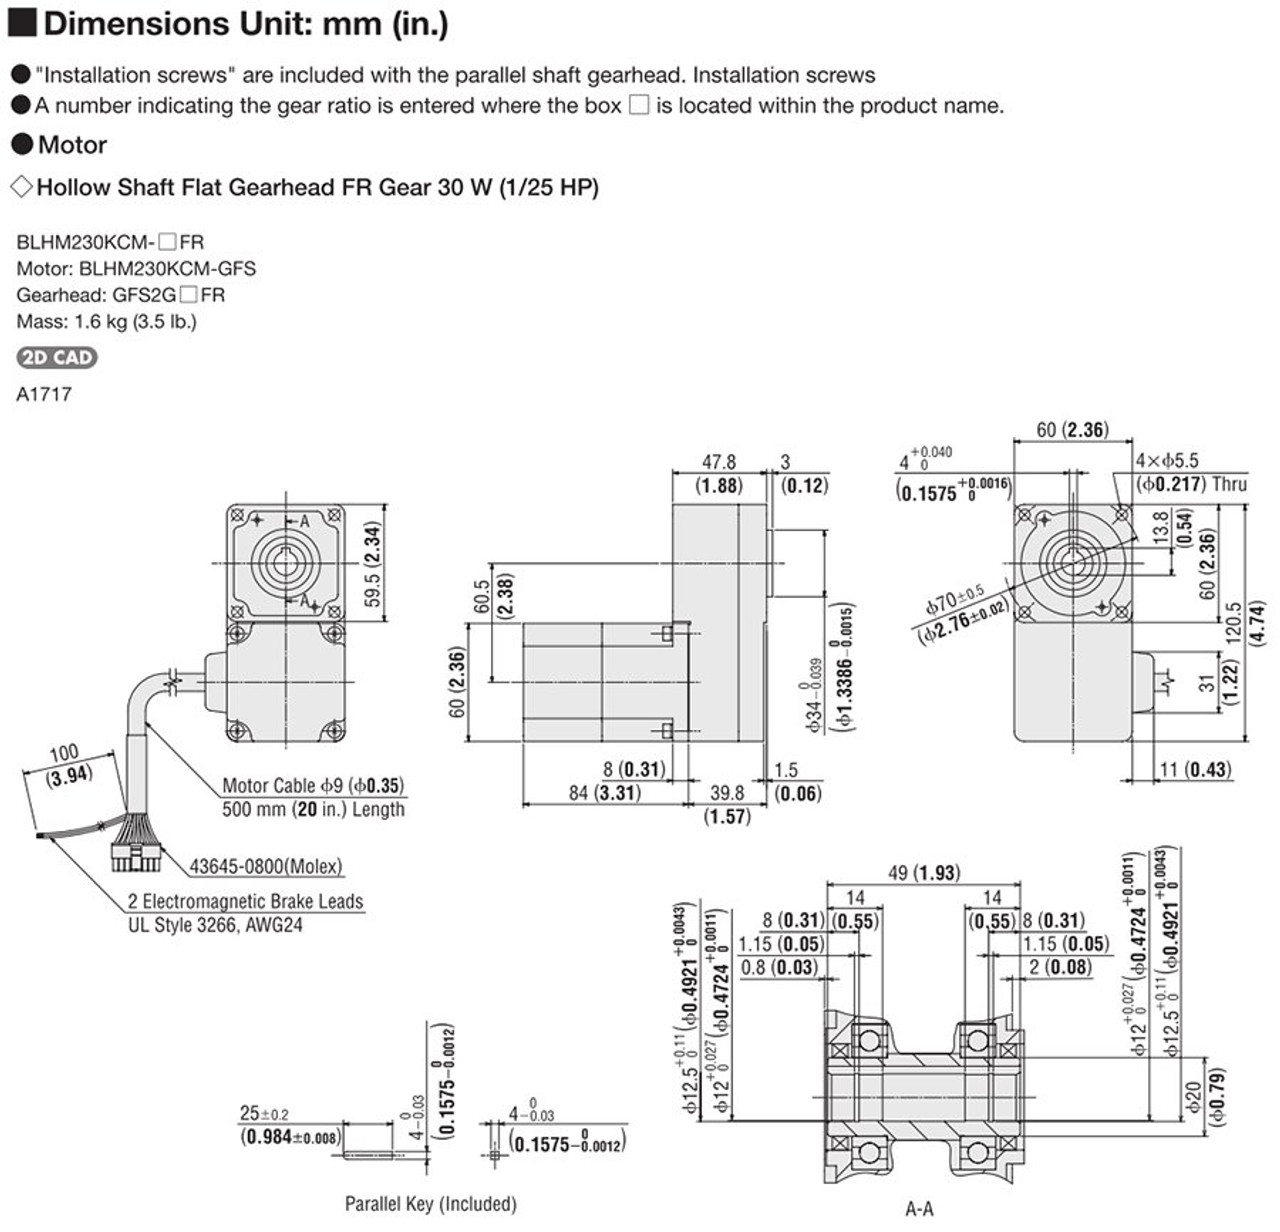 BLHM230KCM-15FR / BLH2D30-KD - Dimensions